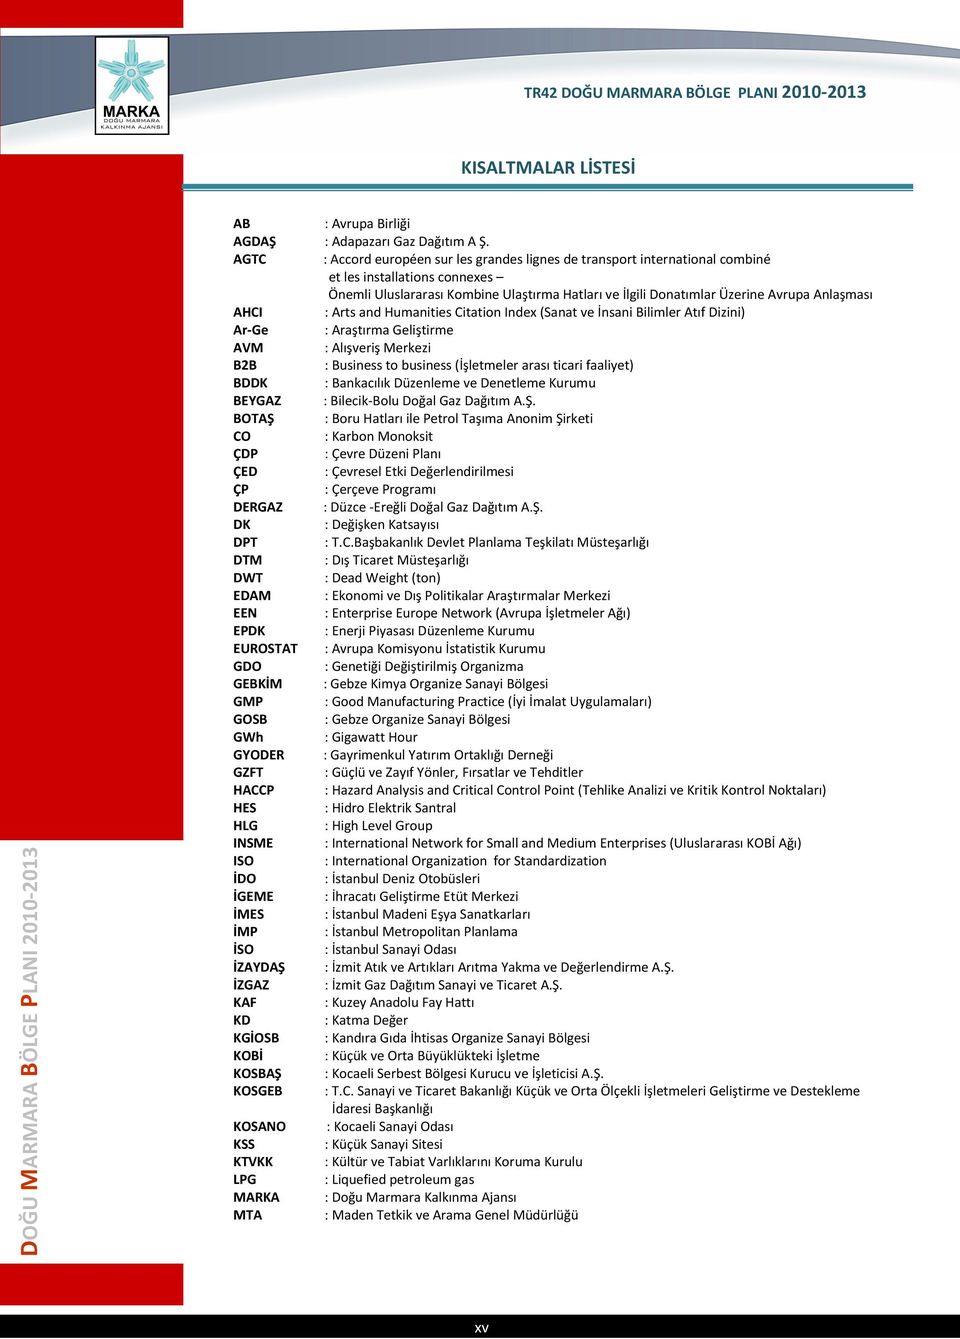 Anlaşması AHCI : Arts and Humanities Citation Index (Sanat ve İnsani Bilimler Atıf Dizini) Ar-Ge : Araştırma Geliştirme AVM : Alışveriş Merkezi B2B : Business to business (İşletmeler arası ticari